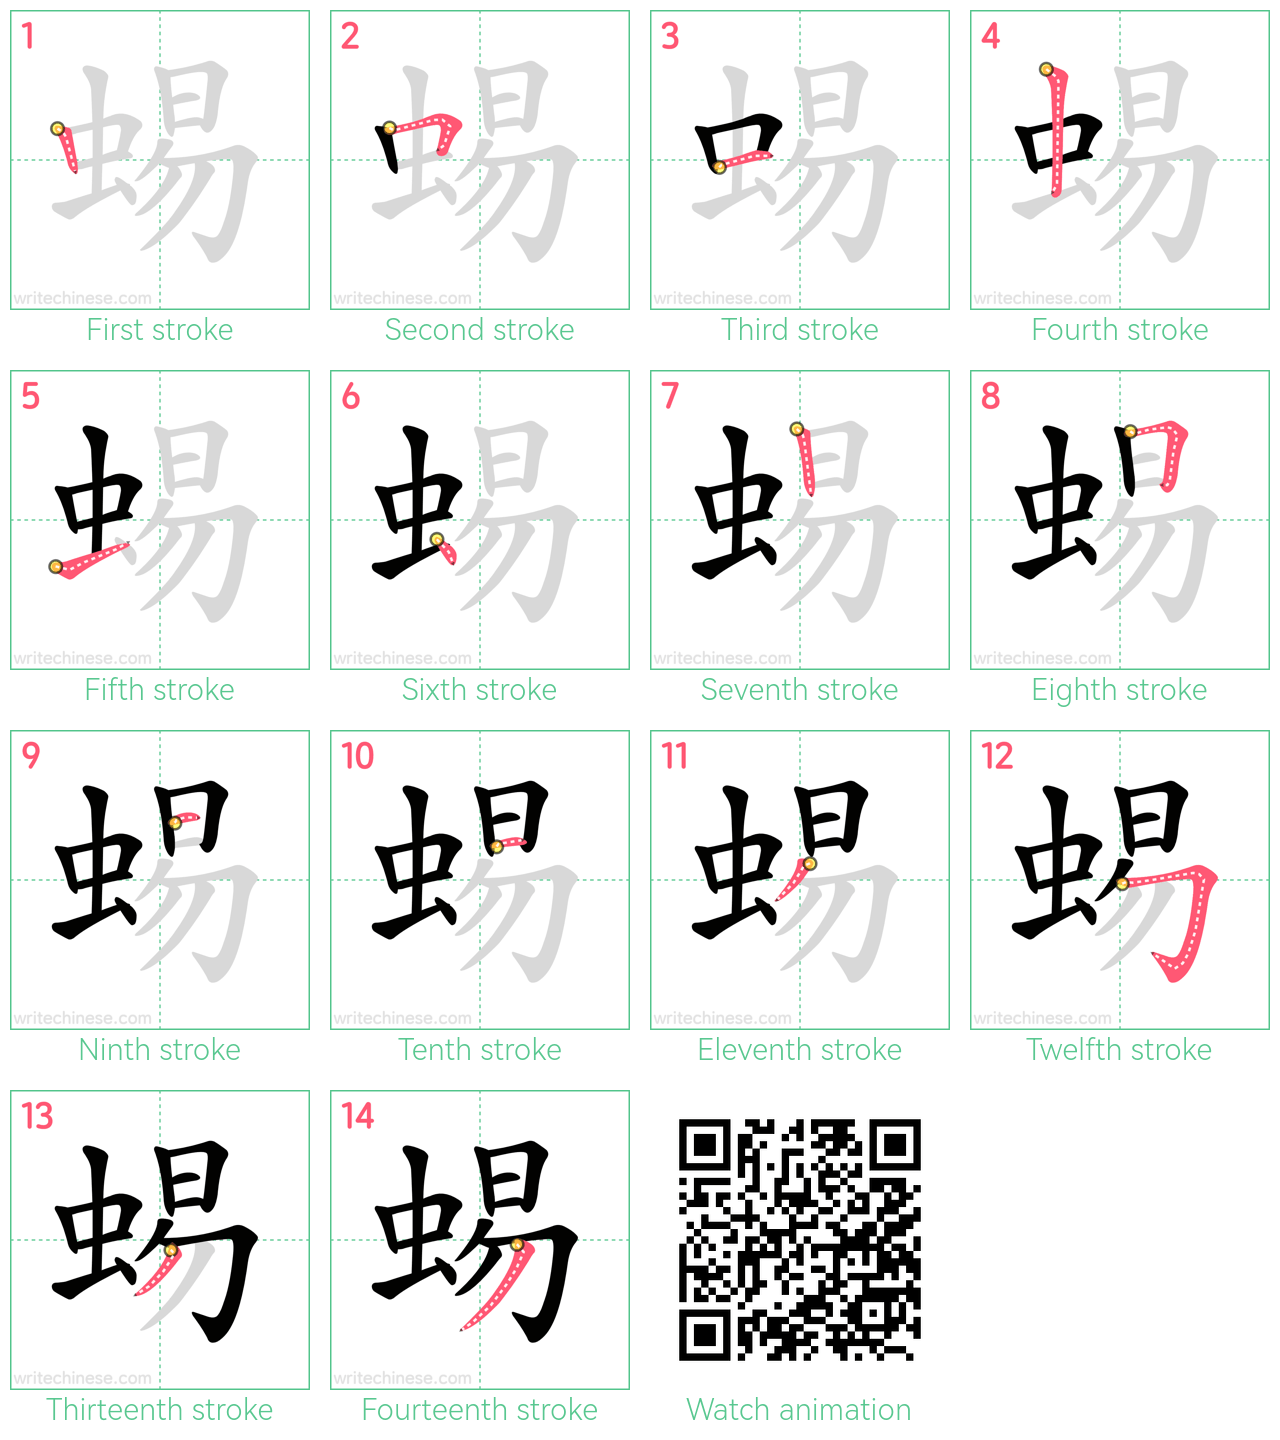 蜴 step-by-step stroke order diagrams